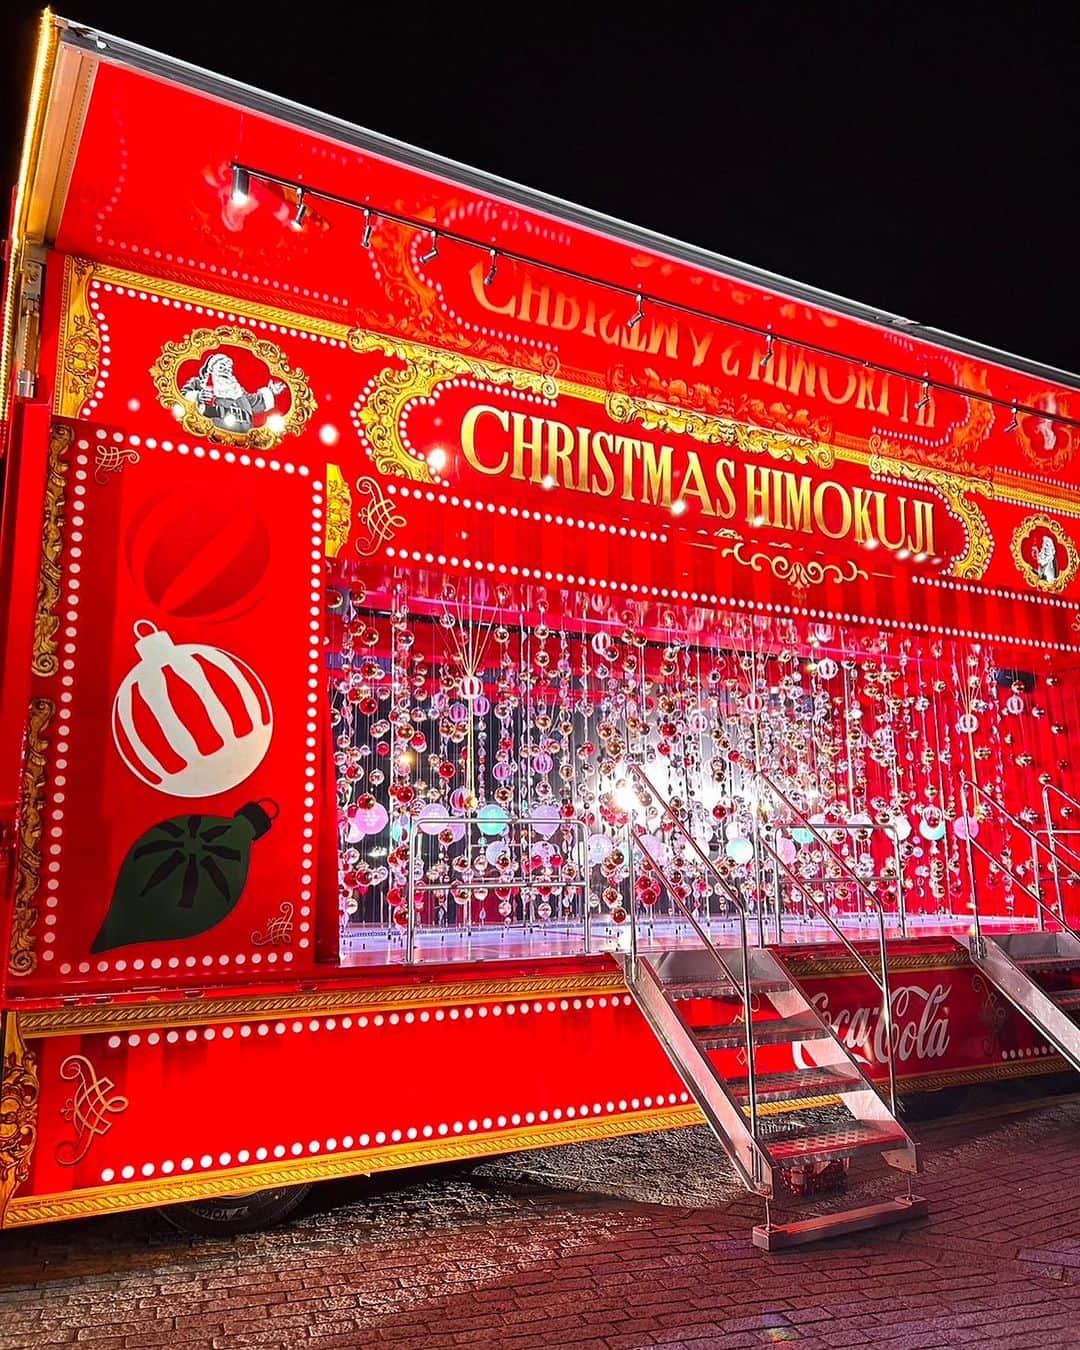 DJ MIYAのインスタグラム：「#PR #コカコーラ  きゃっほーぉ🎄横浜赤レンガ倉庫で素敵なイベントが行われたよ🎵  「コカ･コーラ クリスマスドローンショー＆クリスマストラックお披露目イベント」 に行ってきましたぁぁ❤️  国内最大規模となる1225機のドローンを使用した3Dドローンショー 「コカ･コーラ クリスマスドローンショー 『空飛ぶクリスマストラック』」 は圧巻の美しさです❤️サンタさんも飛び出してきたよ*\(^o^)/*  かわいい〜！空にクリスマストラックやツリーも現れましたぁ💓キラキラで海に光が反射してとっても綺麗でーした♪  コカ･コーラ クリスマストラックが全国8都市を周るらしいよ♡北海道から沖縄まで♪  会場でしか体験できないHIMOKUJIはわくわく❤️  コカ･コーラ ゼロは全員もらえるらしいよっ  しかも横浜市で開催されるイルミネーションイベント「夜にあらわれる光の横浜〈ヨルノヨ2023〉」と連携して開催🎵  2023年12月2日（土）から開始される「コカ･コーラ クリスマストラック」の「HIMOKUJI」の体験会も楽しかったぁ❤️ ひいた人全員にプレゼントが当たるからやってみてくださ〜い♡  @cocacola_japan  #コカコーラクリスマストラック #CocaColaChristmas #空飛ぶクリスマストラック  #cocacola #ドローンショー #クリスマス #メリークリスマス #クリスマス2023 #メリクリ #ホリデー #サンタさん #キラキラ好き #イルミネーション #イルミネーション2023 #横浜みなとみらい #みなとみらい #MM21 #横浜 #クリスマスイベント #yokohama #サンタ #Merryxmas #ホリデーシーズン #クリスマス好き #3Dドローンショー #ドローン #最新技術」